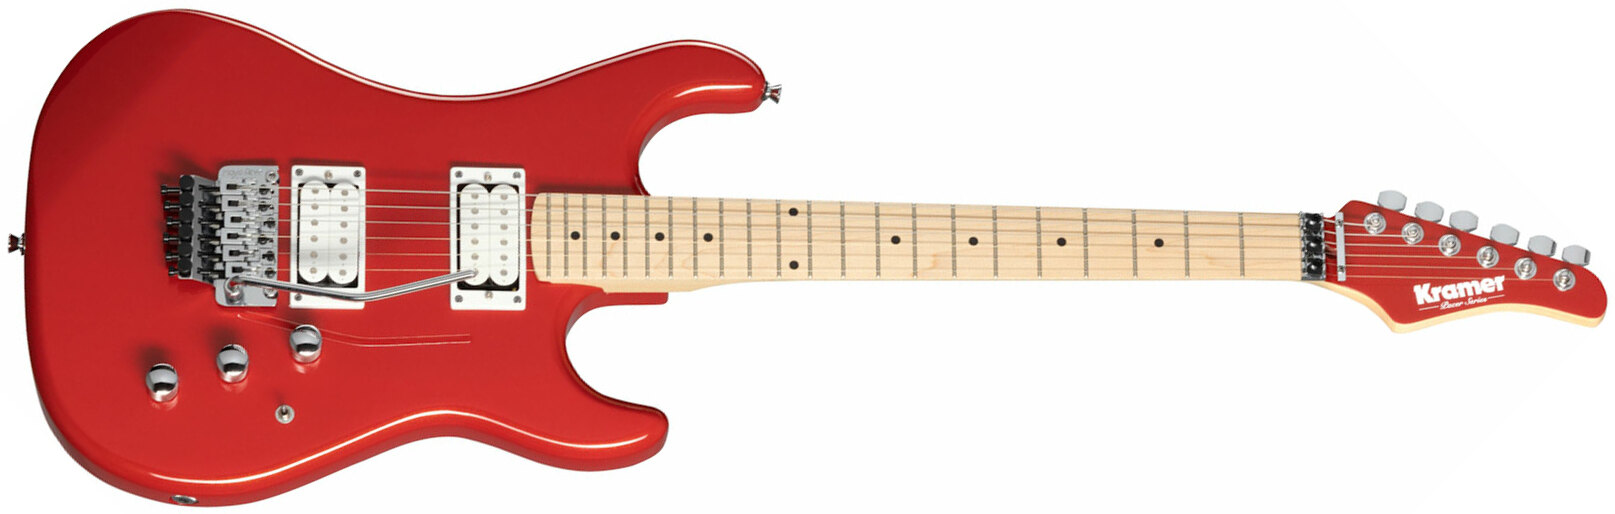 Kramer Pacer Classic 2h Fr Mn - Scarlet Red Metallic - Elektrische gitaar in Str-vorm - Main picture